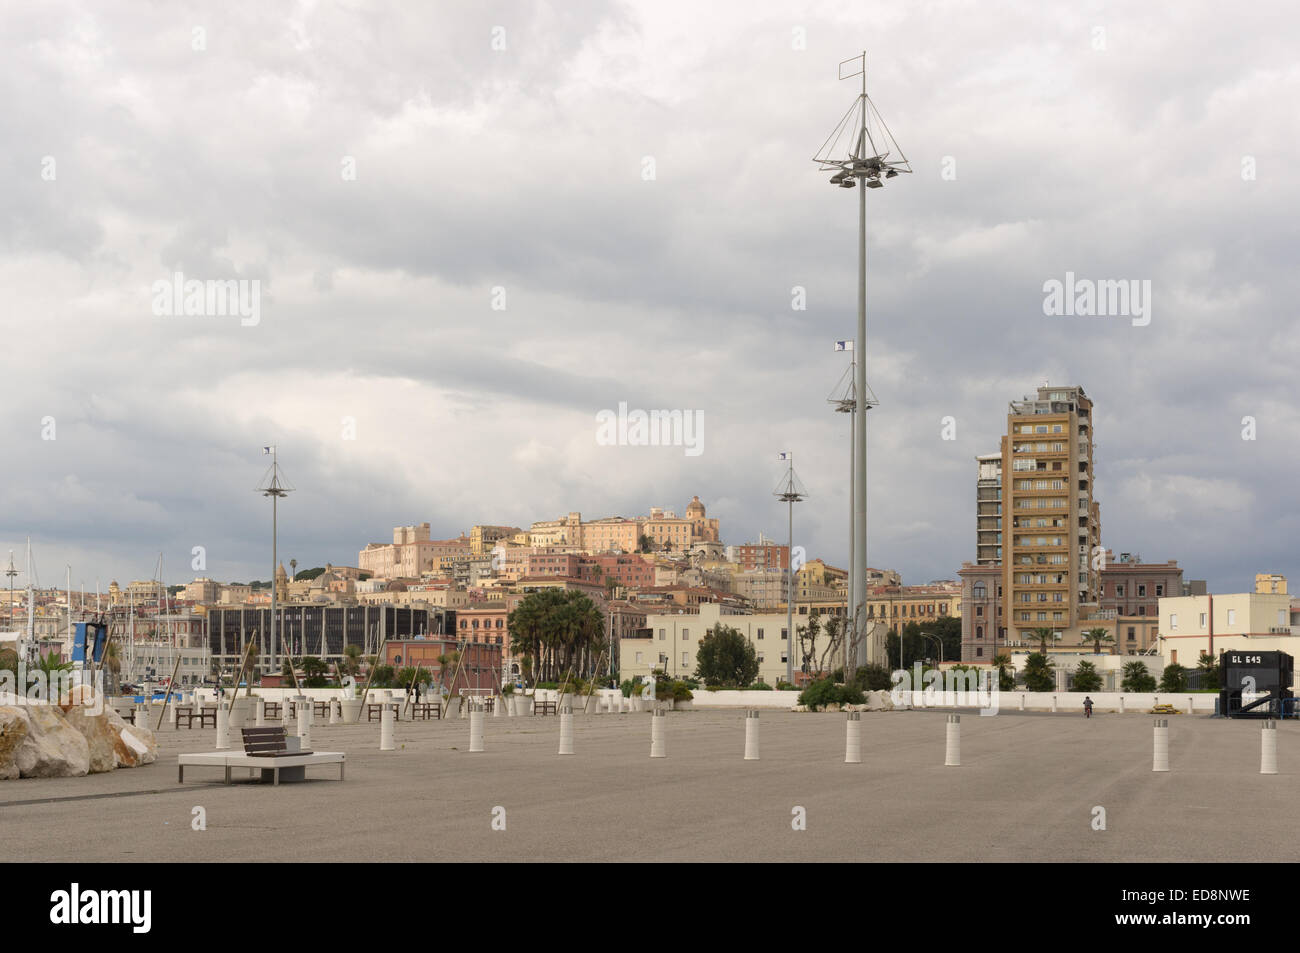 View of the historic center of Cagliari, Sardinia Stock Photo